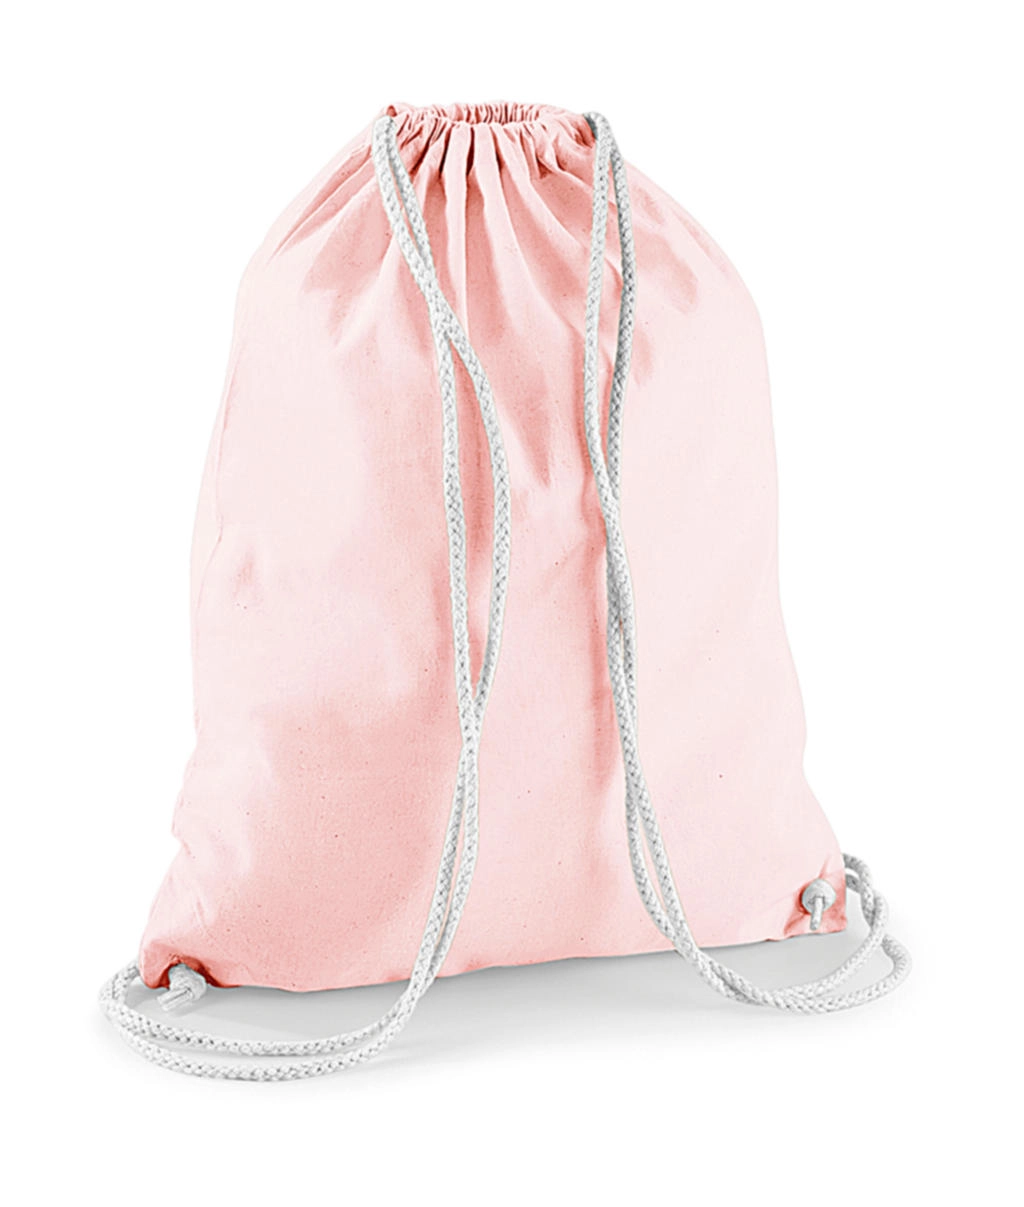 Cotton Gymsac zum Besticken und Bedrucken in der Farbe Pastel Pink/White mit Ihren Logo, Schriftzug oder Motiv.